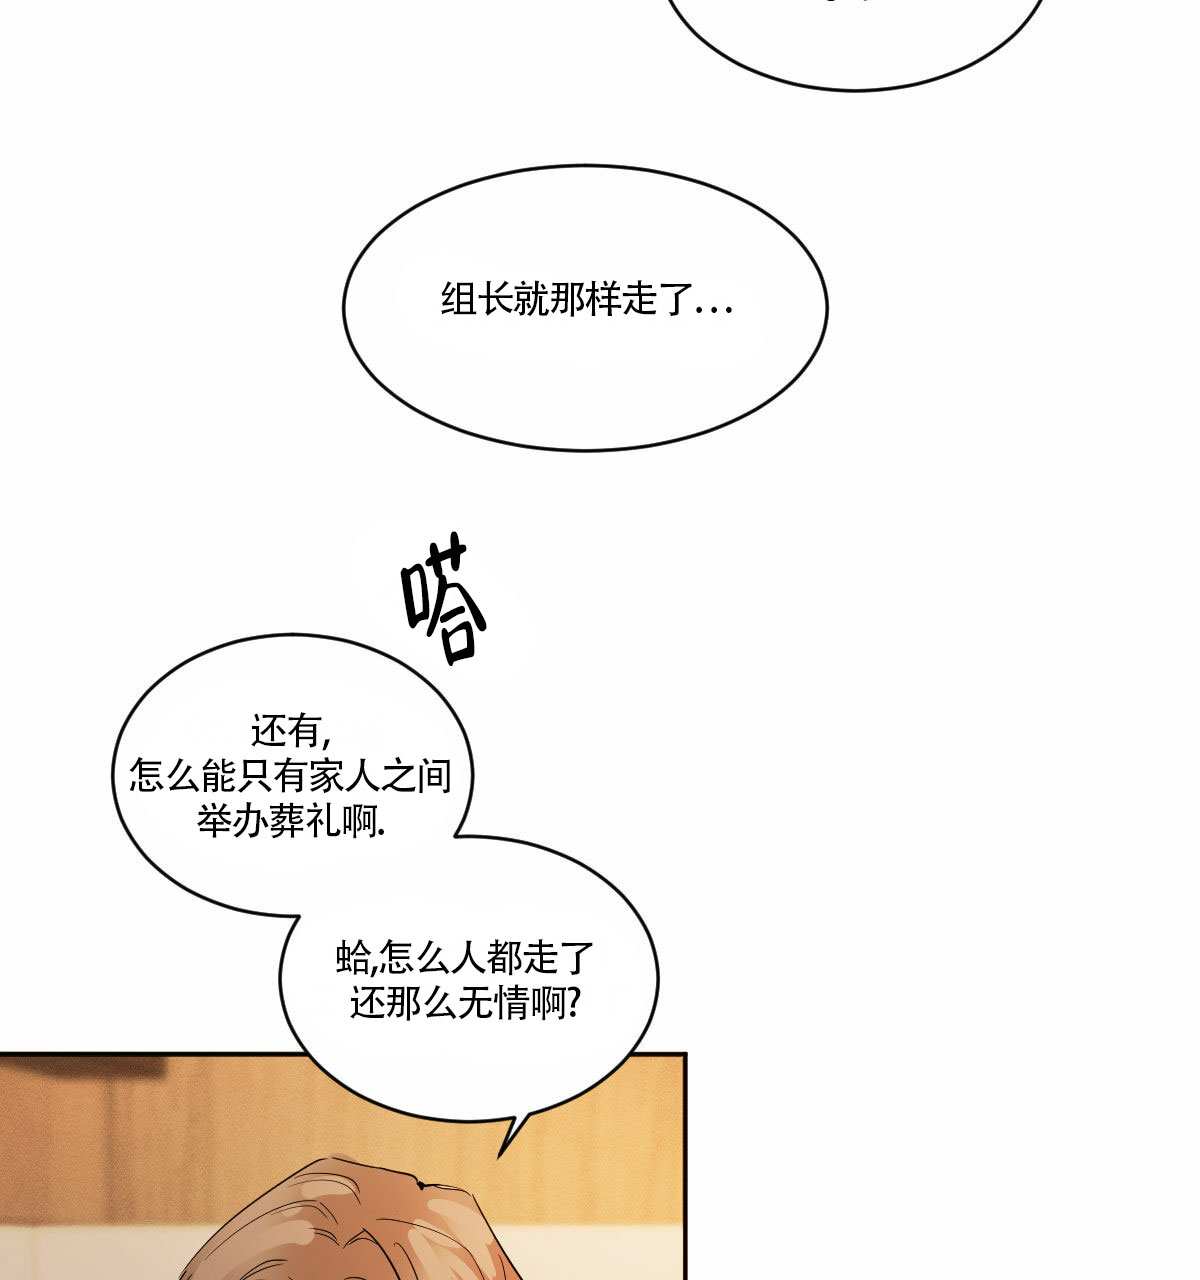 啵乐官网免费漫画4